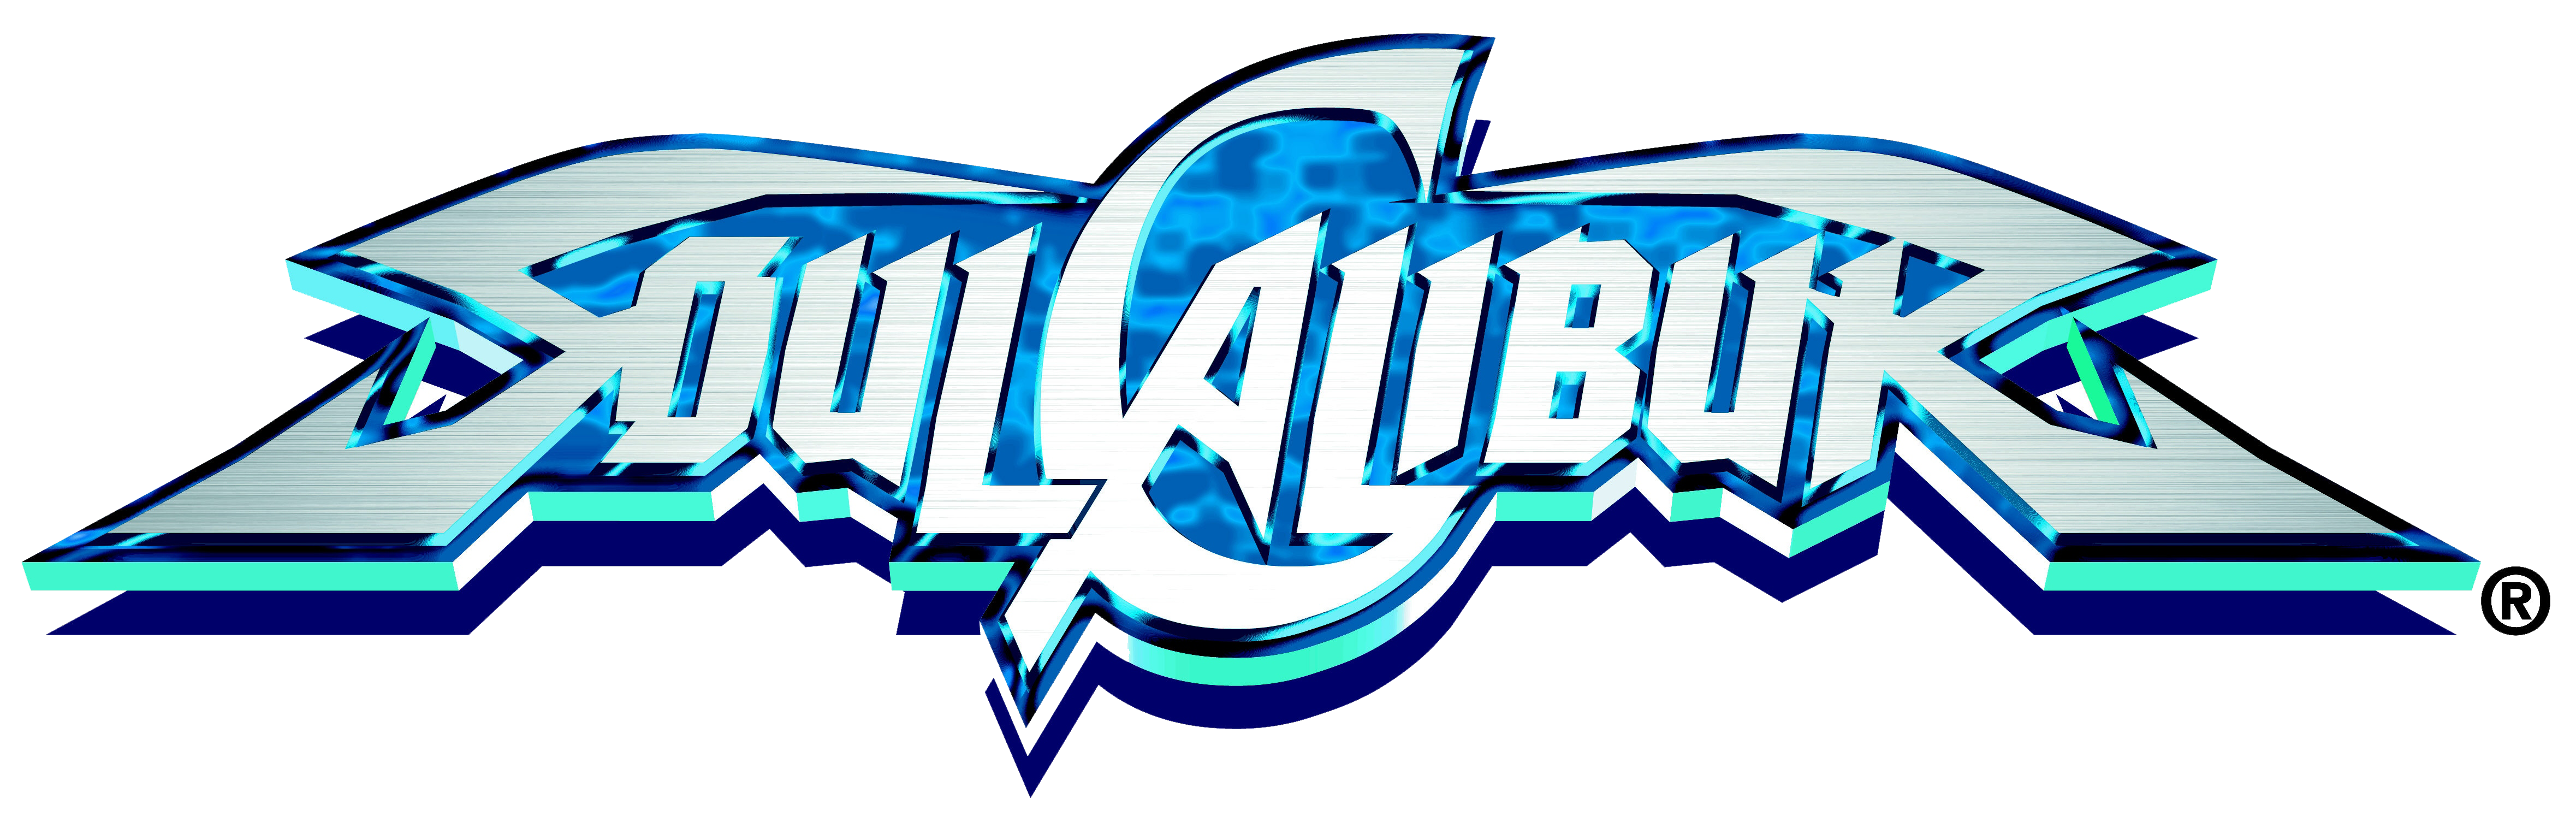 Soul_Calibur_logo.png